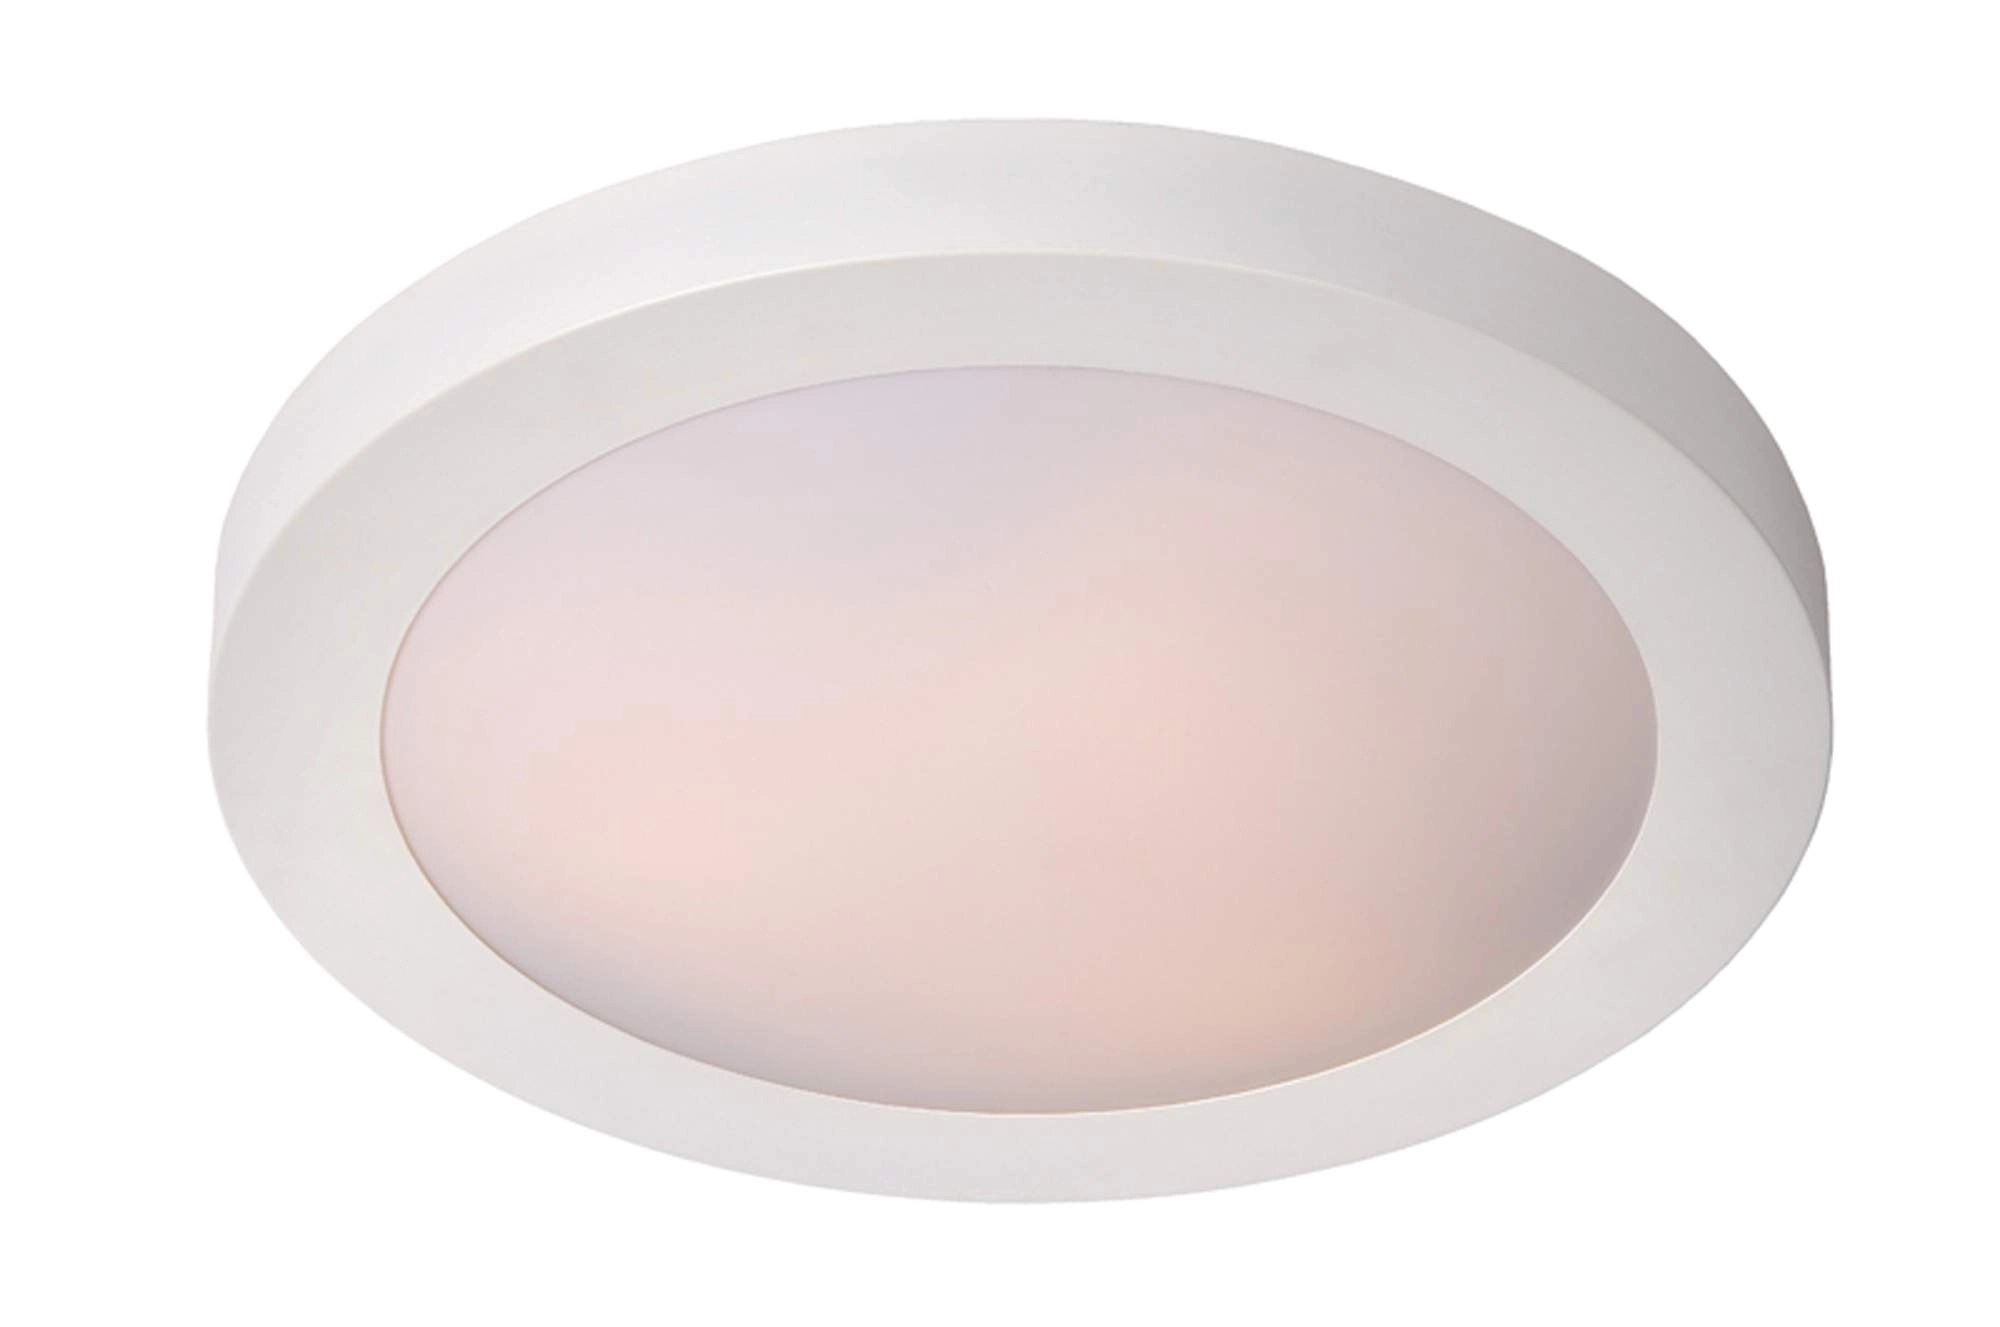 LU 79158/02/31 Lucide FRESH - Flush ceiling light Bathroom - Ø 35 cm - 2xE27 - IP44 - White